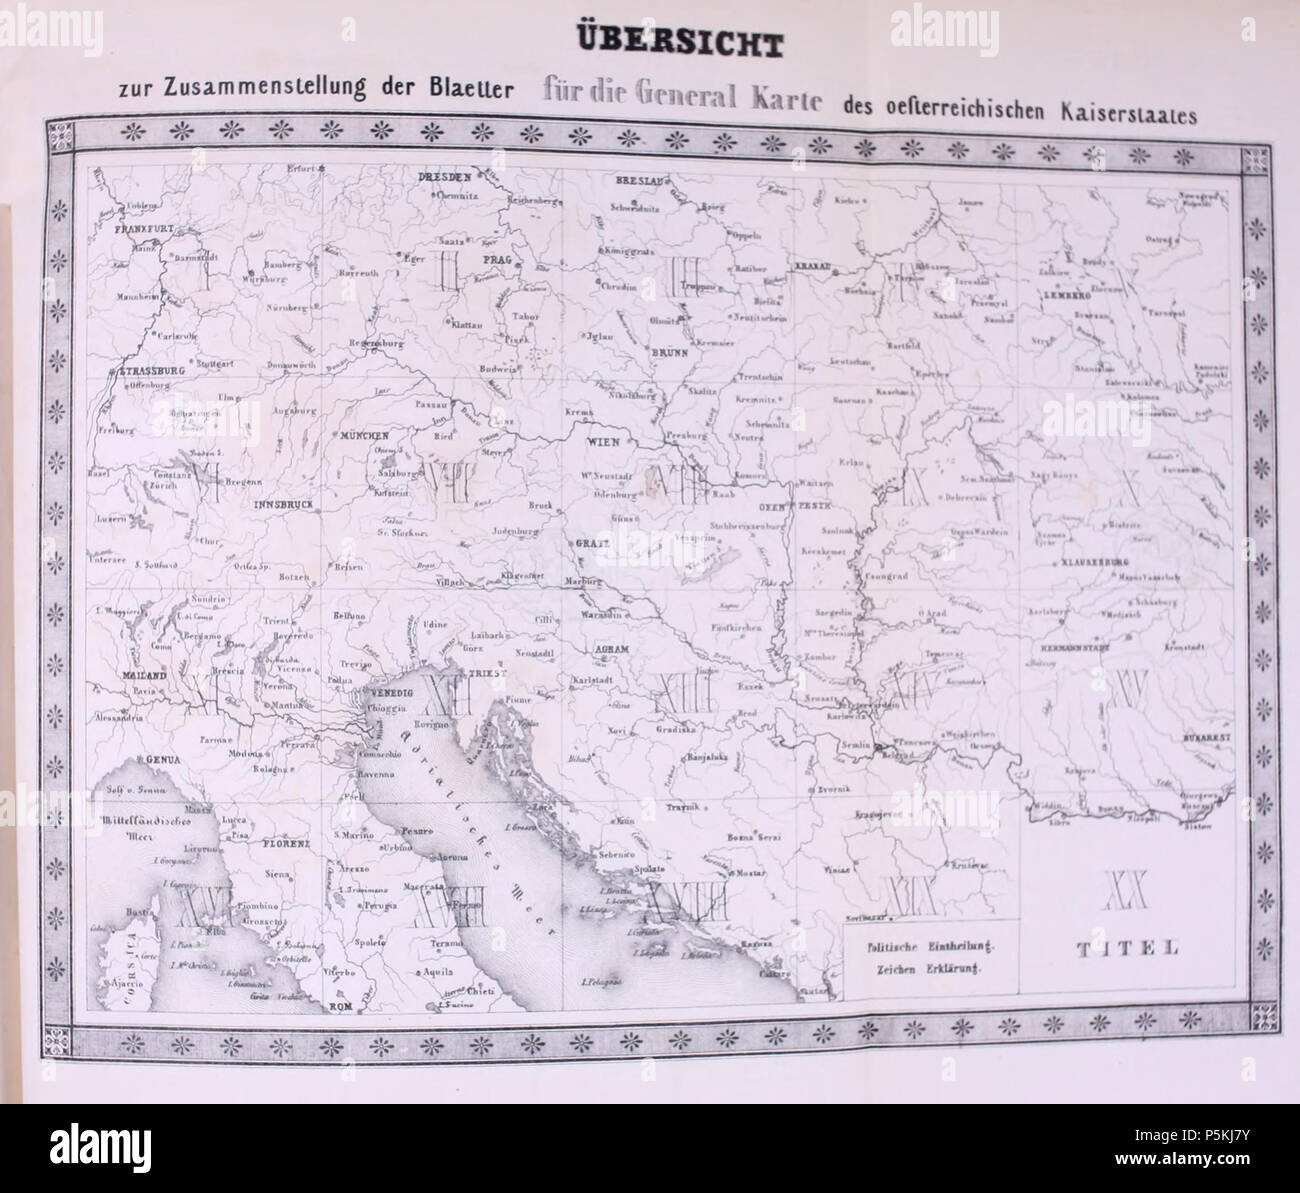 95 Amtlicher Bericht über die Versammlung Deutscher Naturforscher und Aerzte (1856 - 1856) (18162164322) Stock Photo